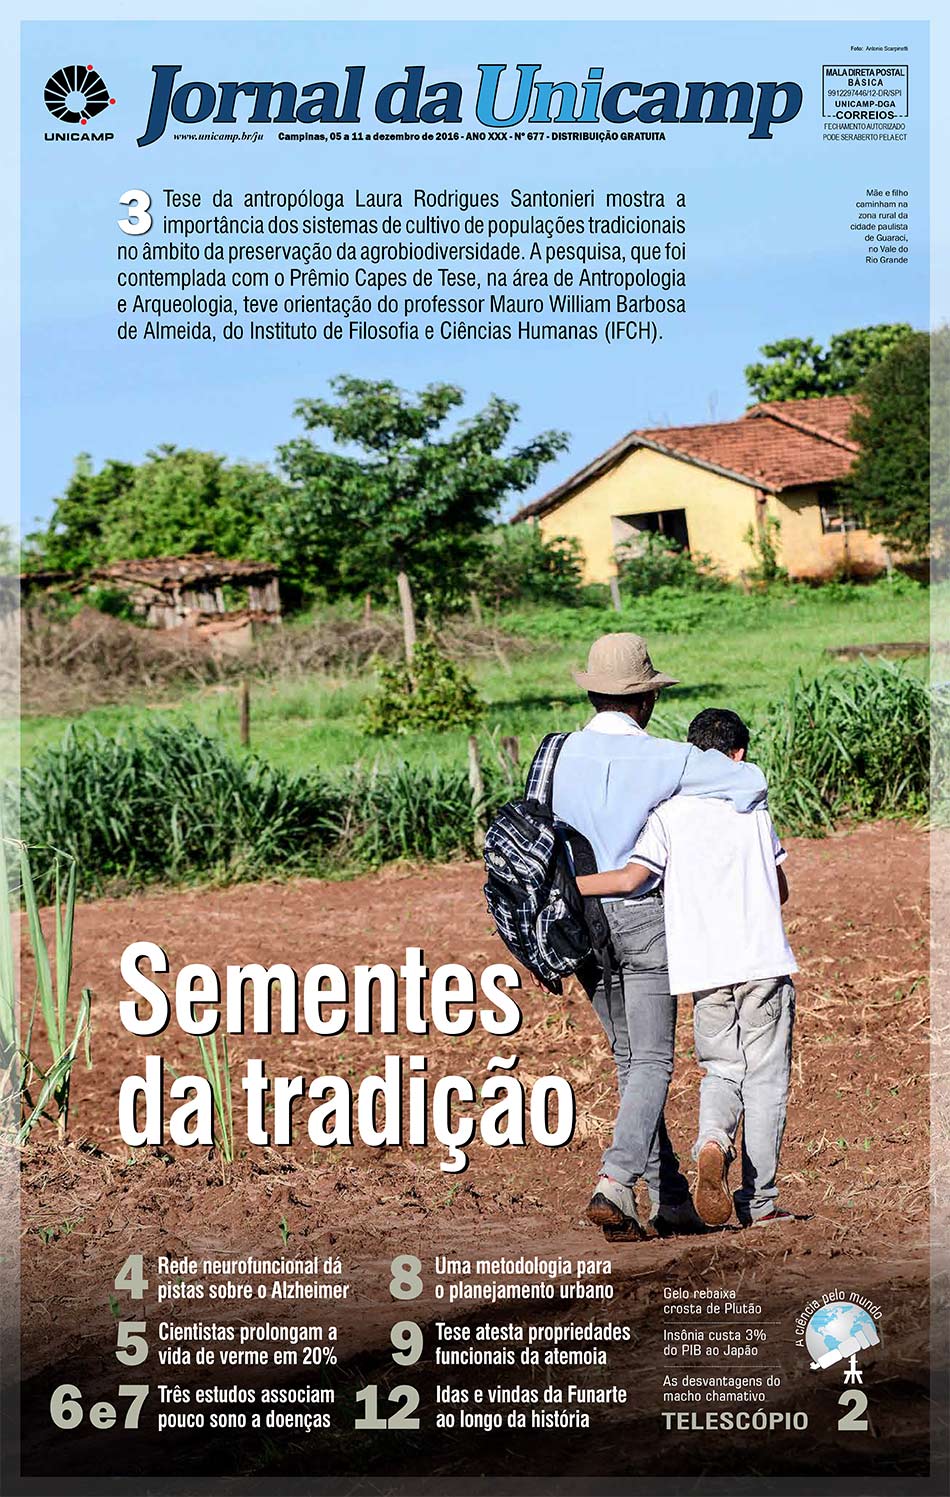 Capa do Jornal da Unicamp Sementes da tradição - Imagem de uma mãe e seu filho caminhando na plantação rumo à casa